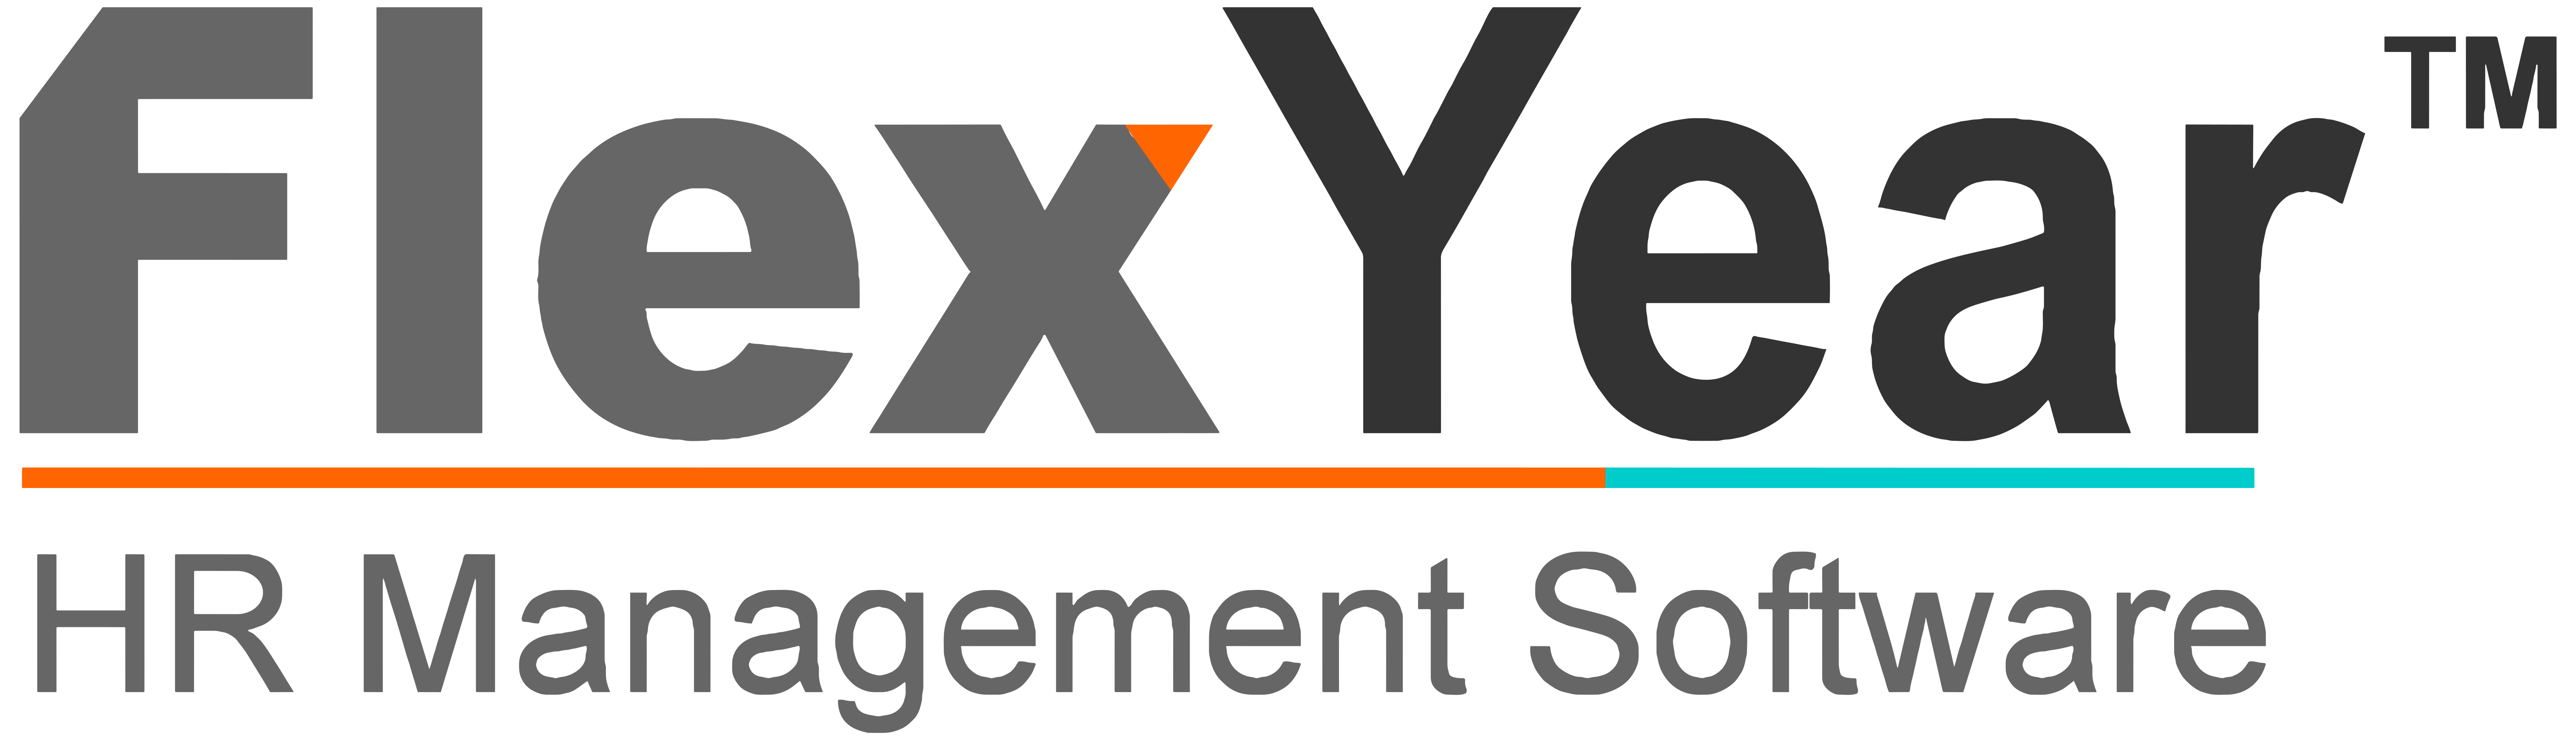 FlexYear-logo